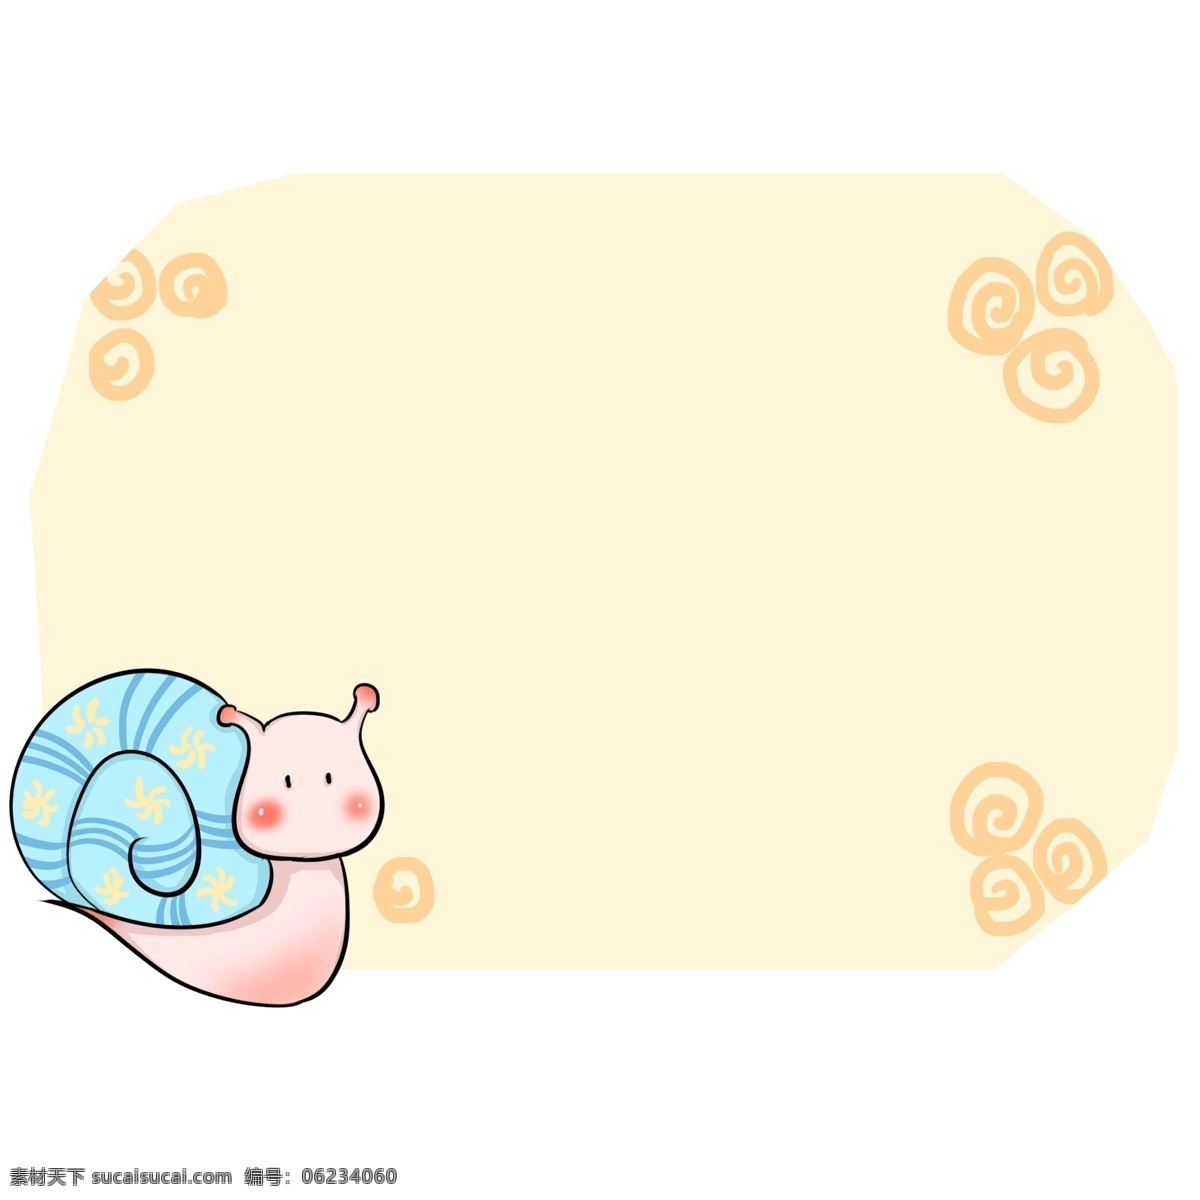 手绘 粉色 蜗牛 边框 蓝色的蜗牛壳 粉色的蜗牛 漂亮的边框 可爱的蜗牛 卡通边框 手绘蜗牛边框